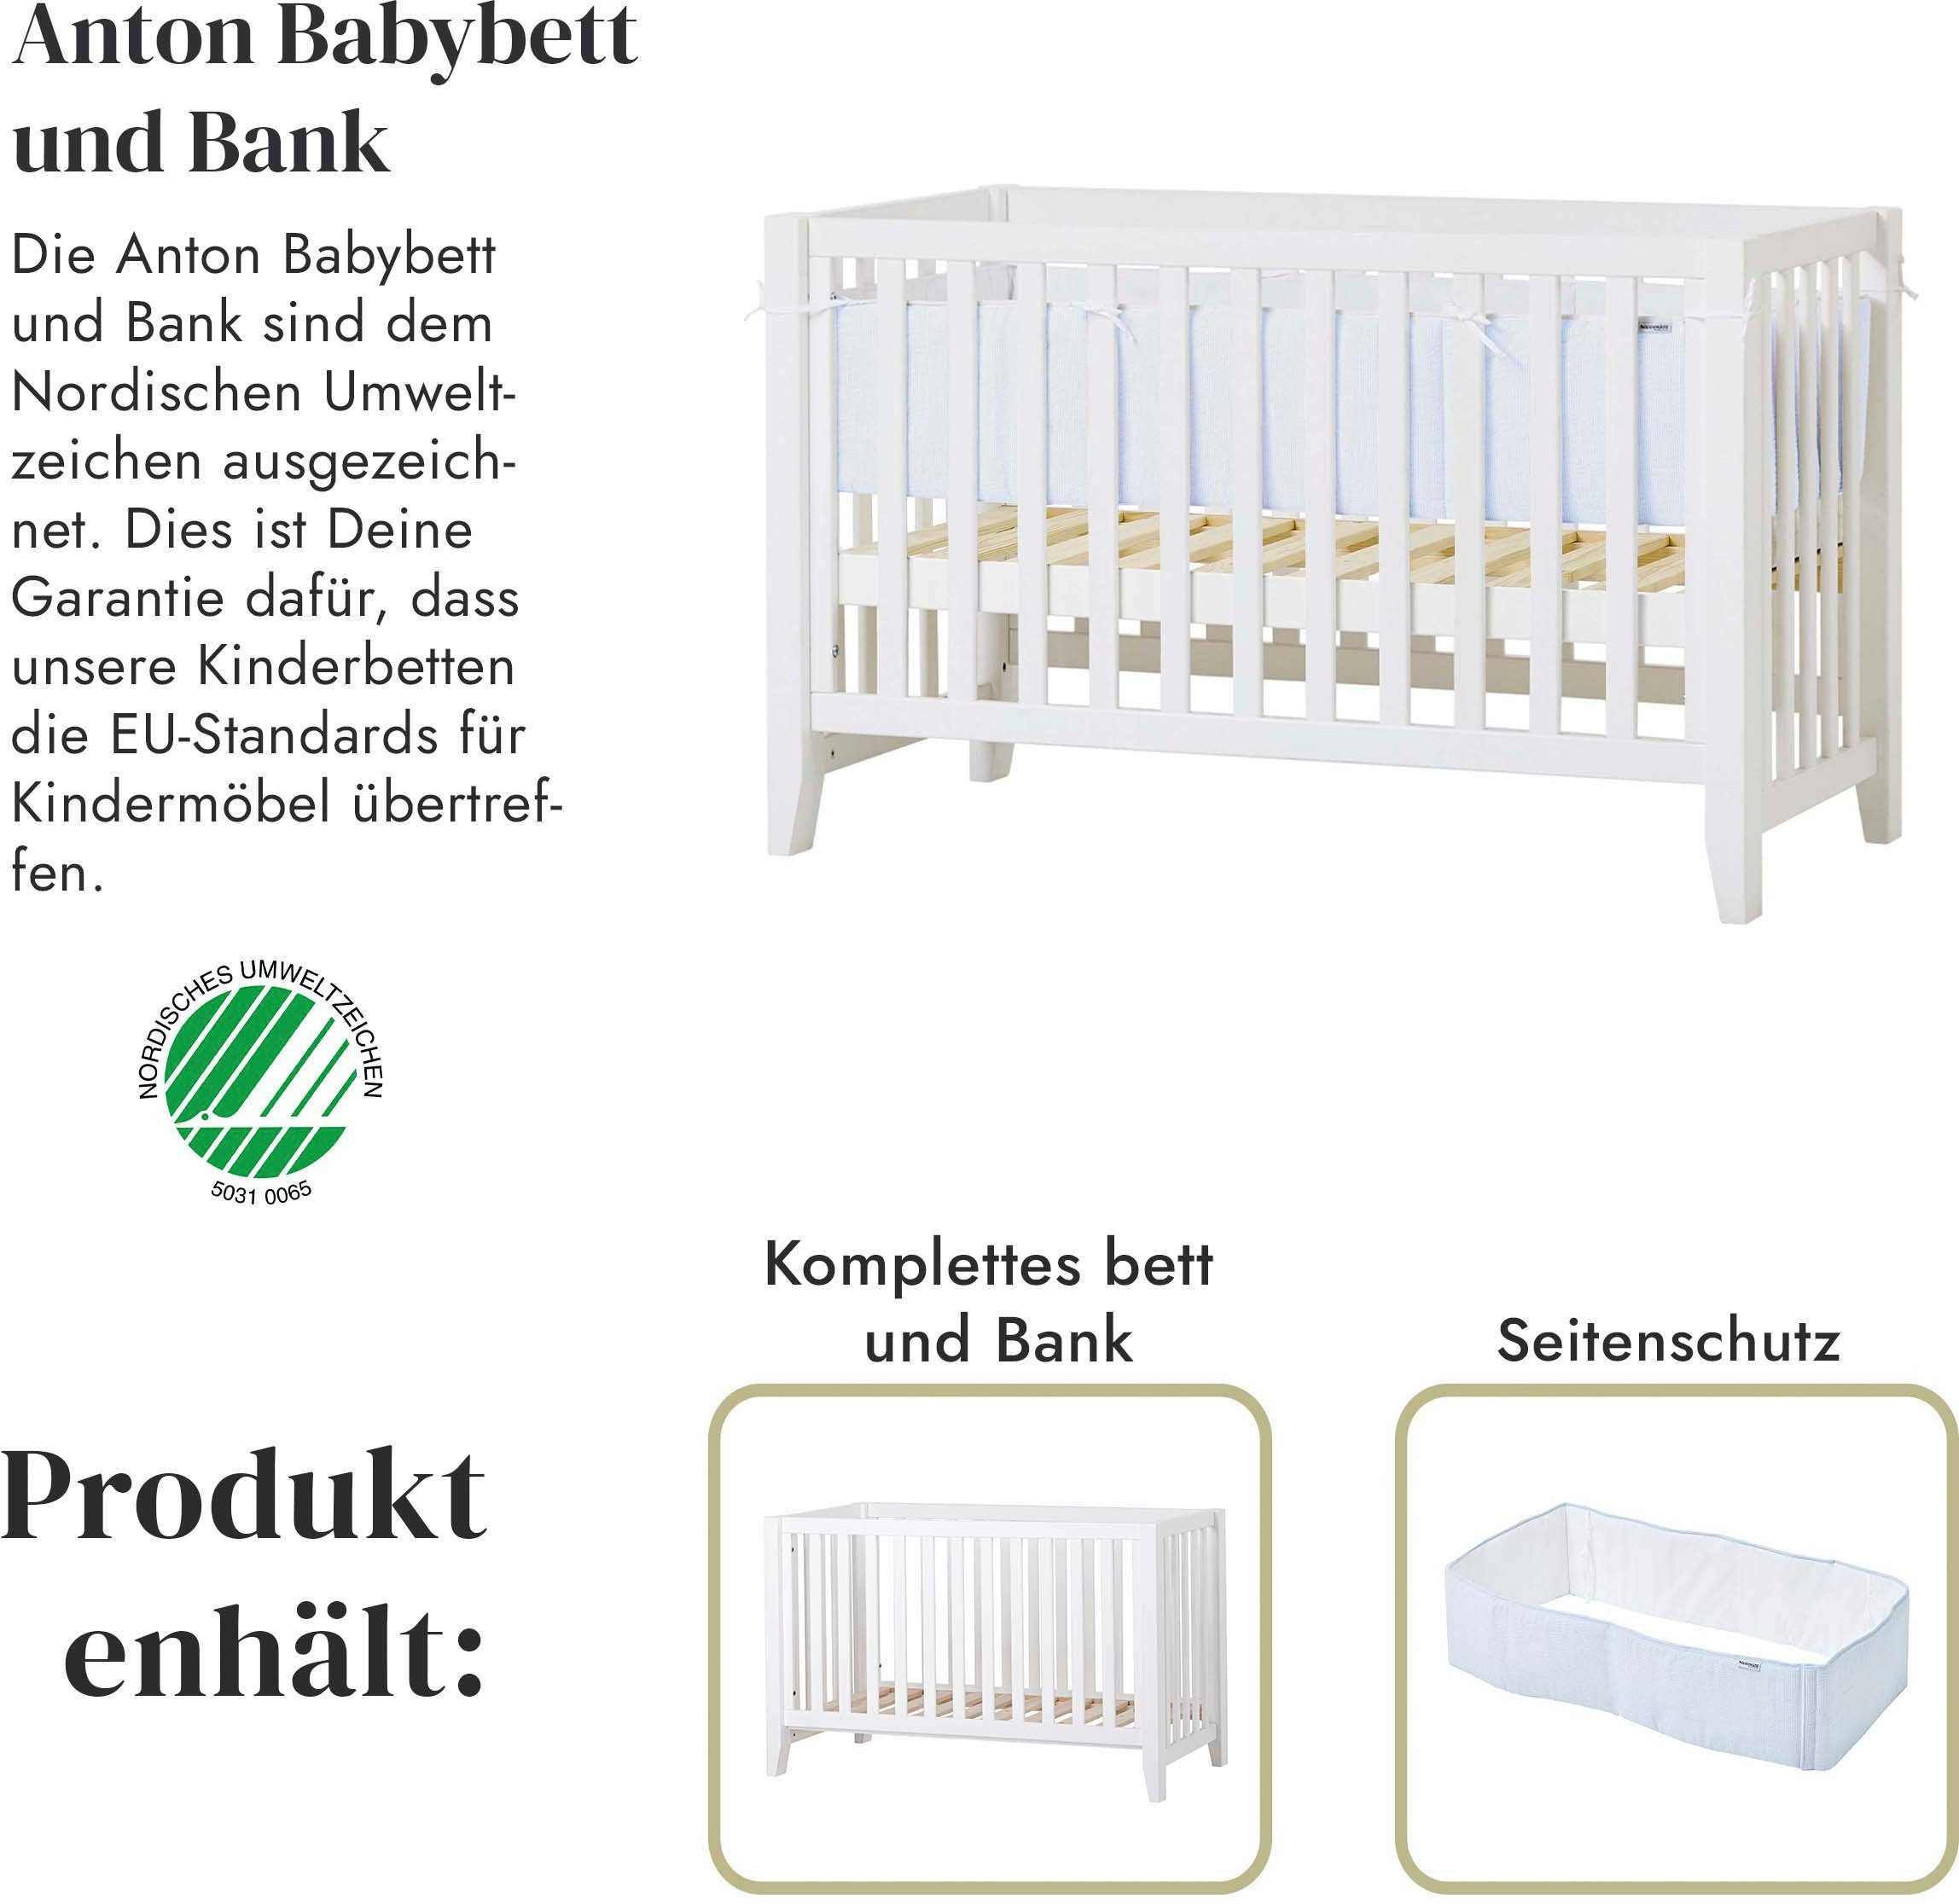 Hoppekids Babymöbel-Set hoppekids Hans Christian, Zusammenstellungen (Set), in verschiedenen weiß/hellblau